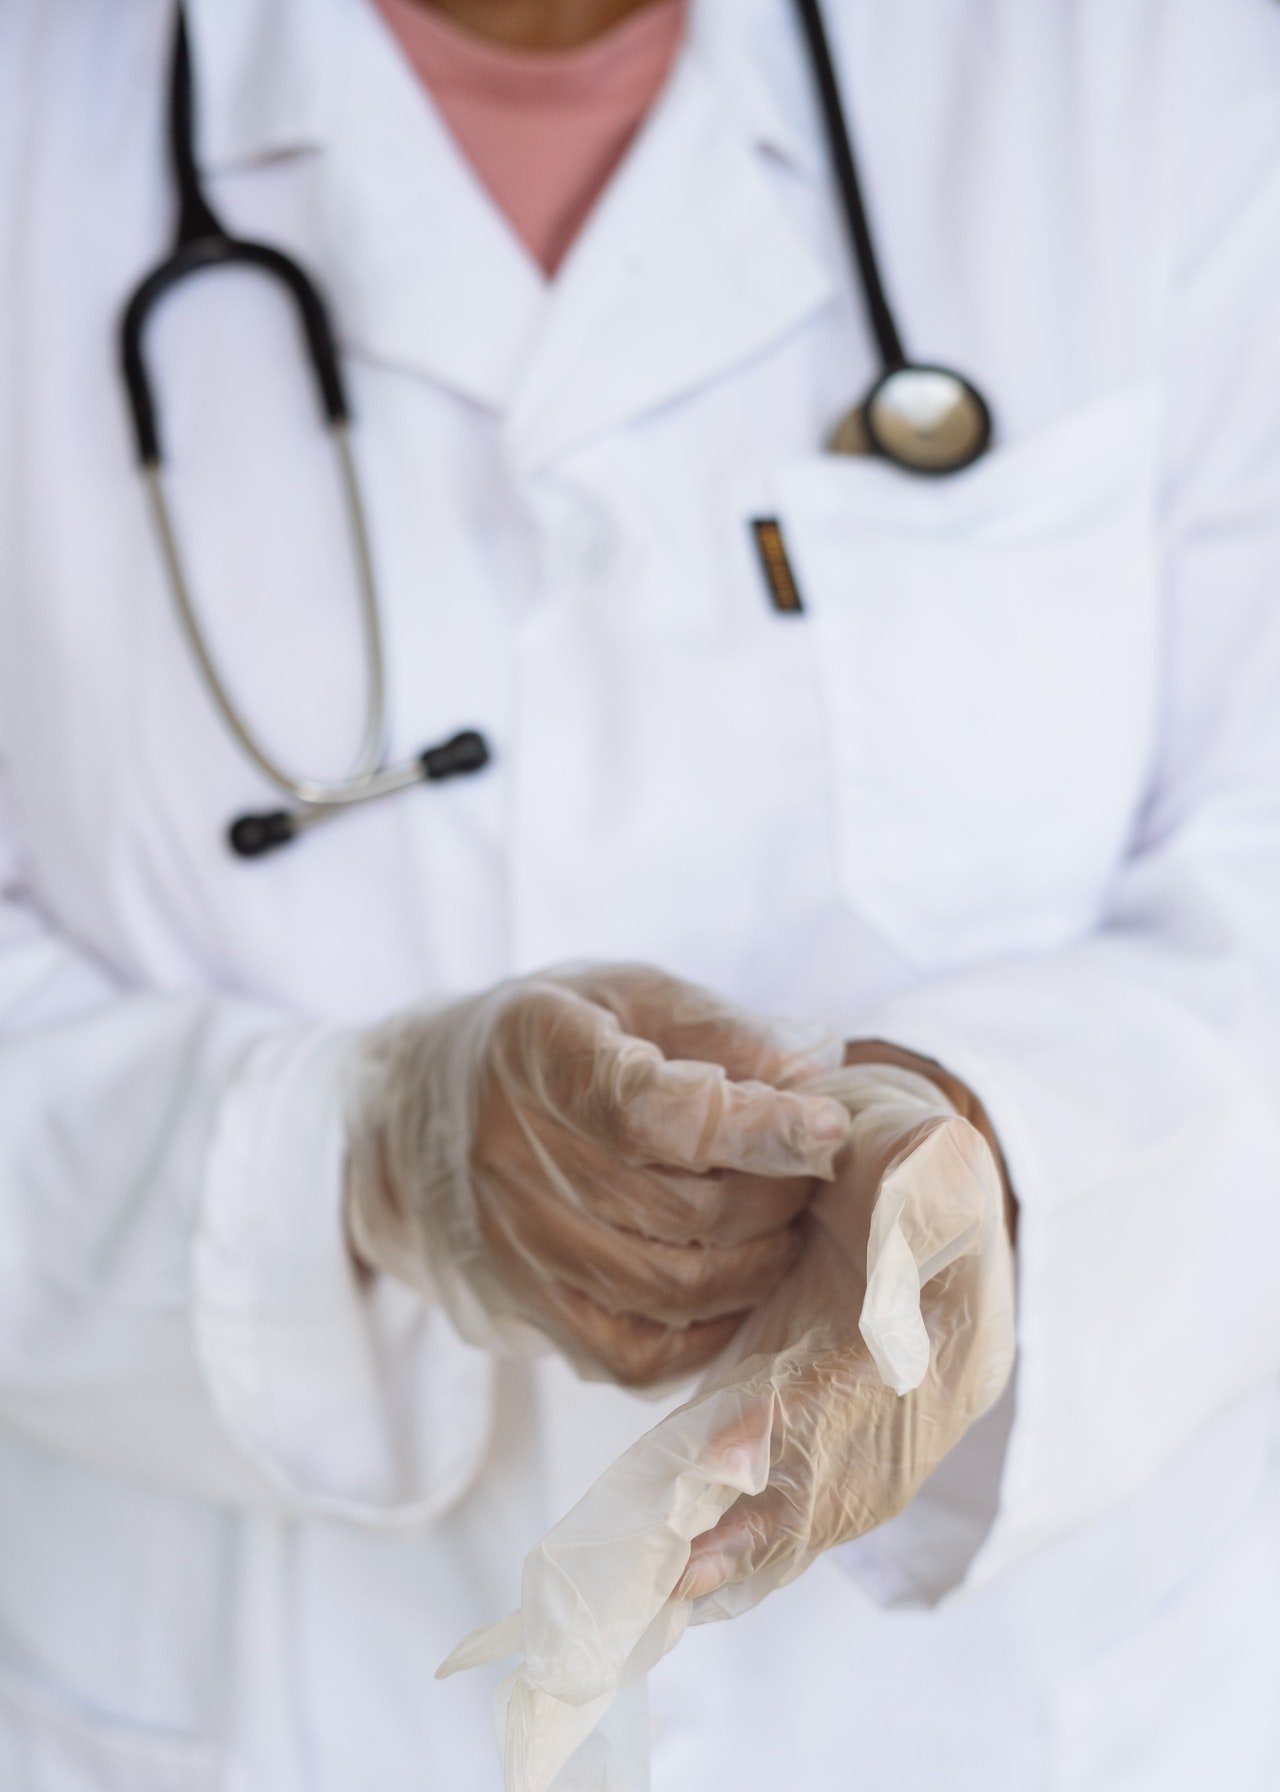 Médico poniéndose los guantes. | Foto: Pexels